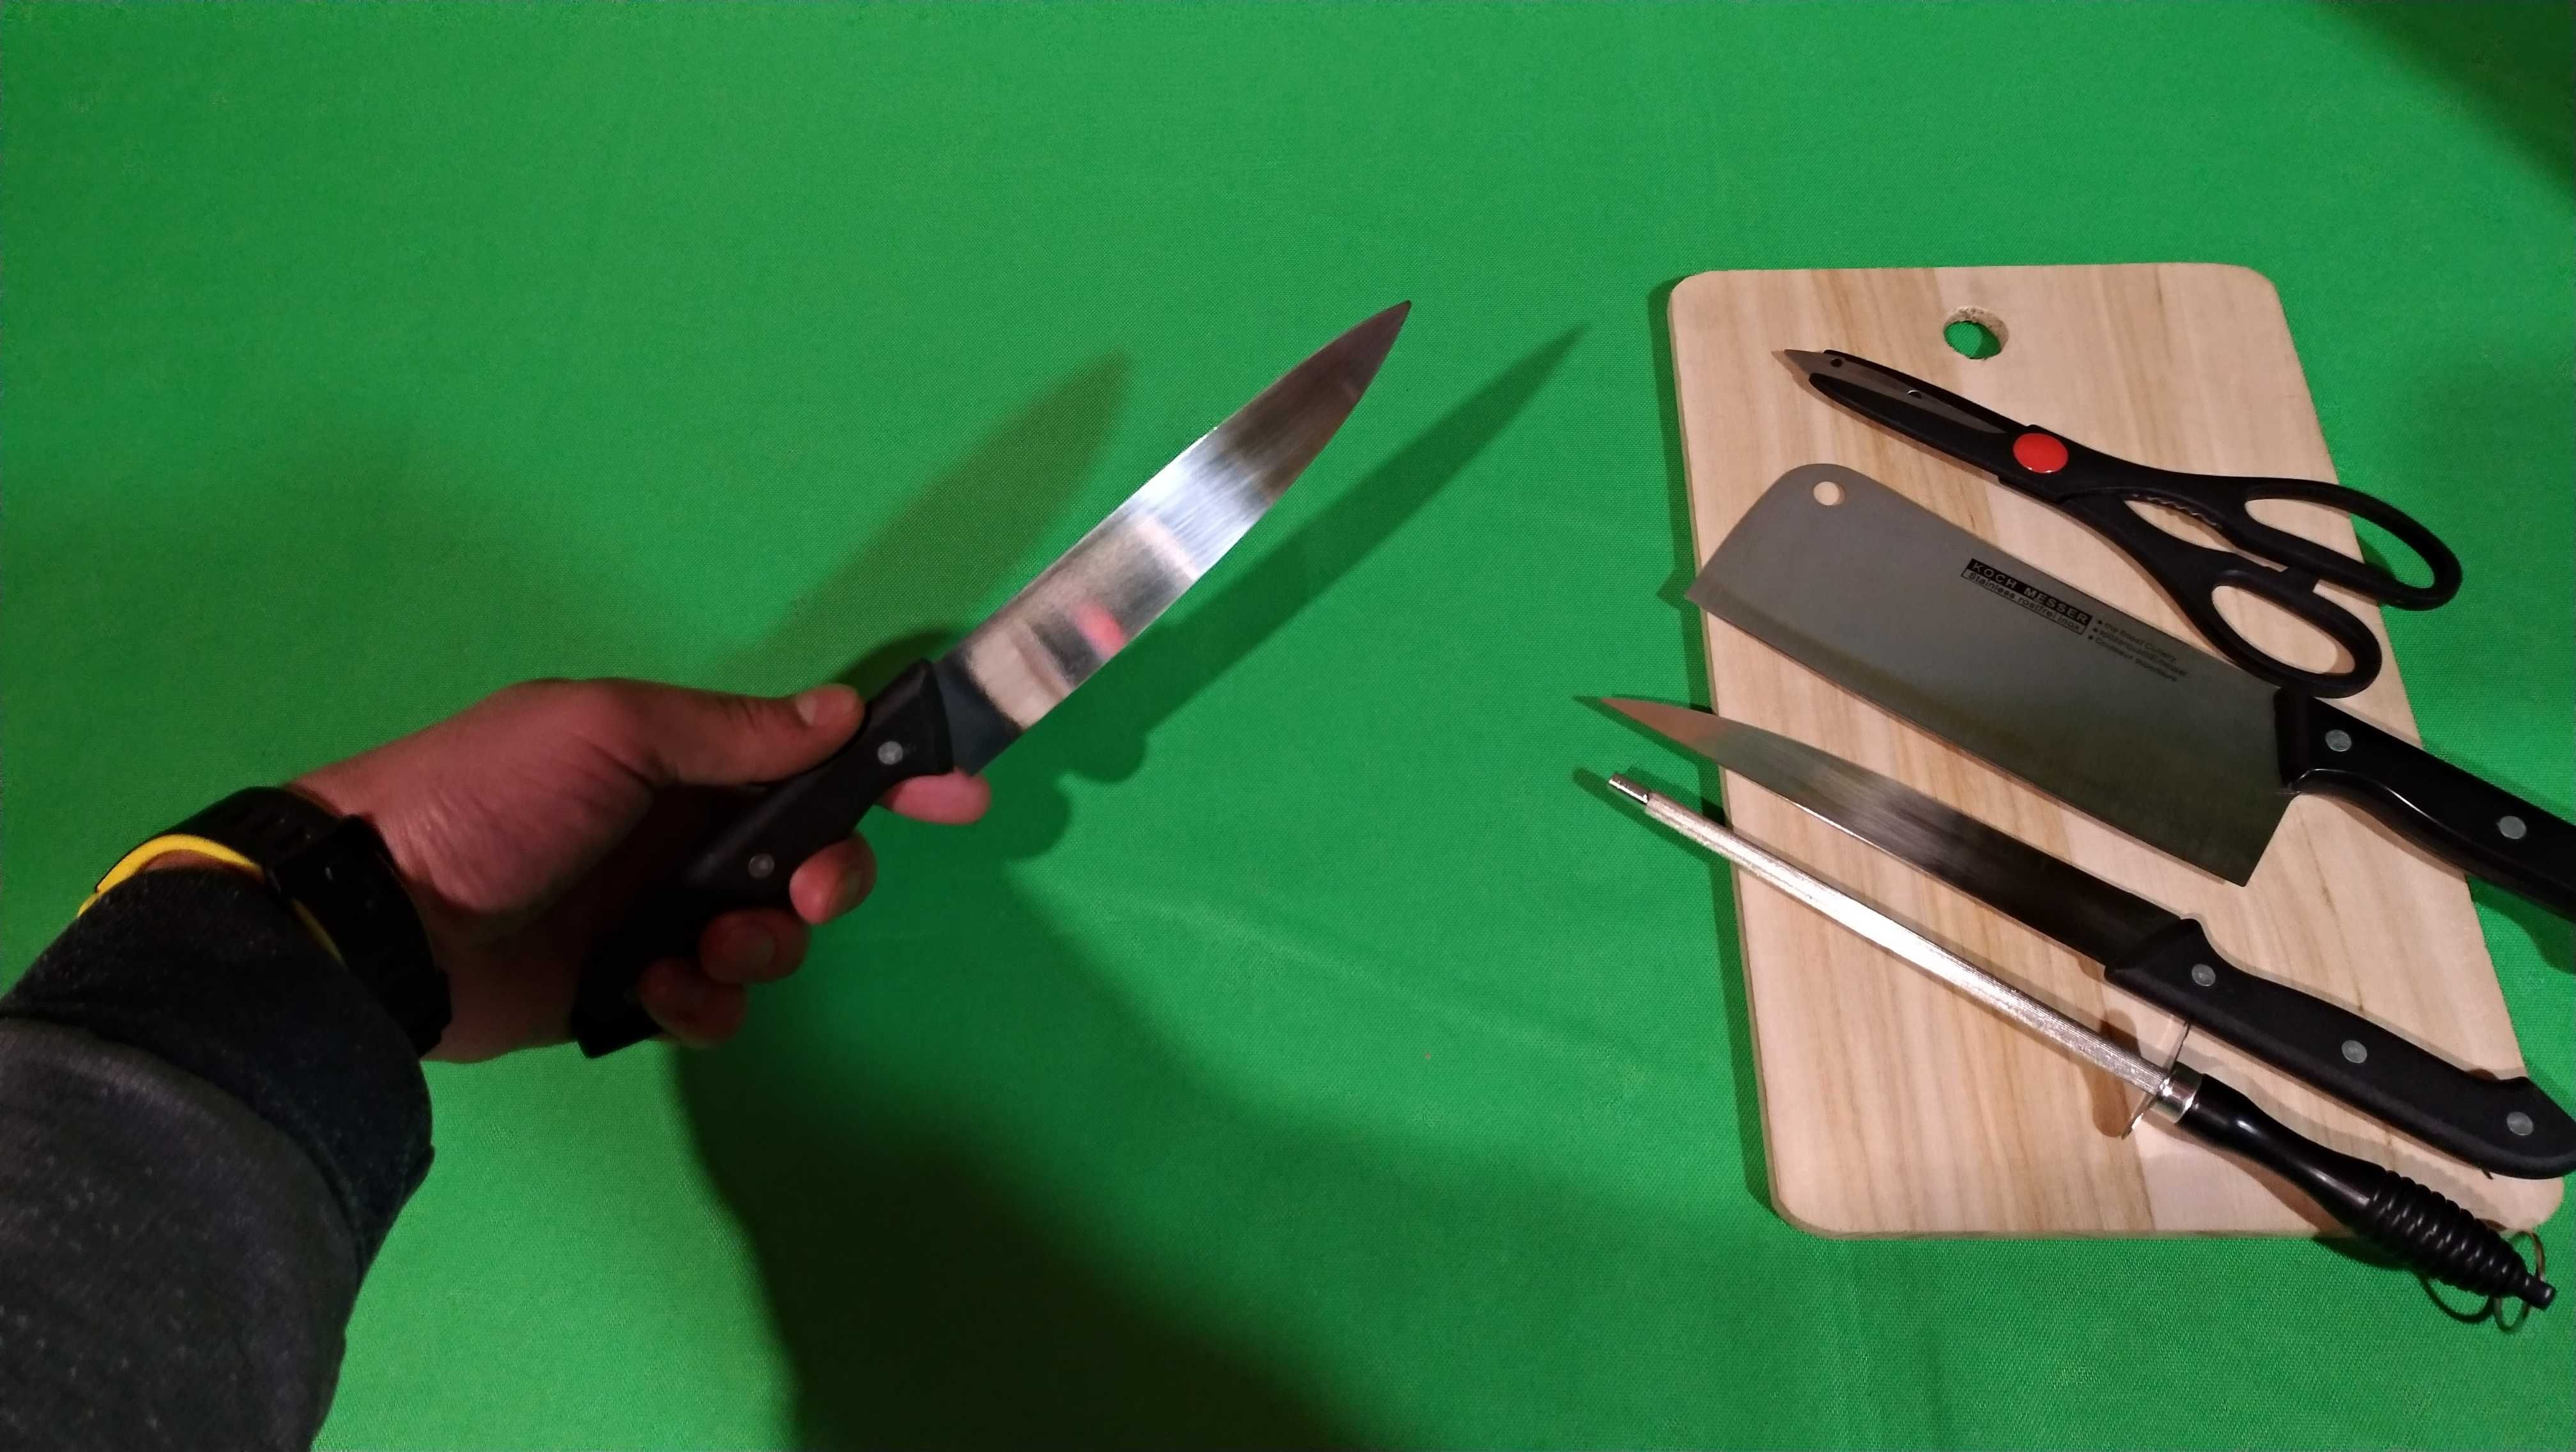 Набор ножей с досточкой набор для кухни 6шт